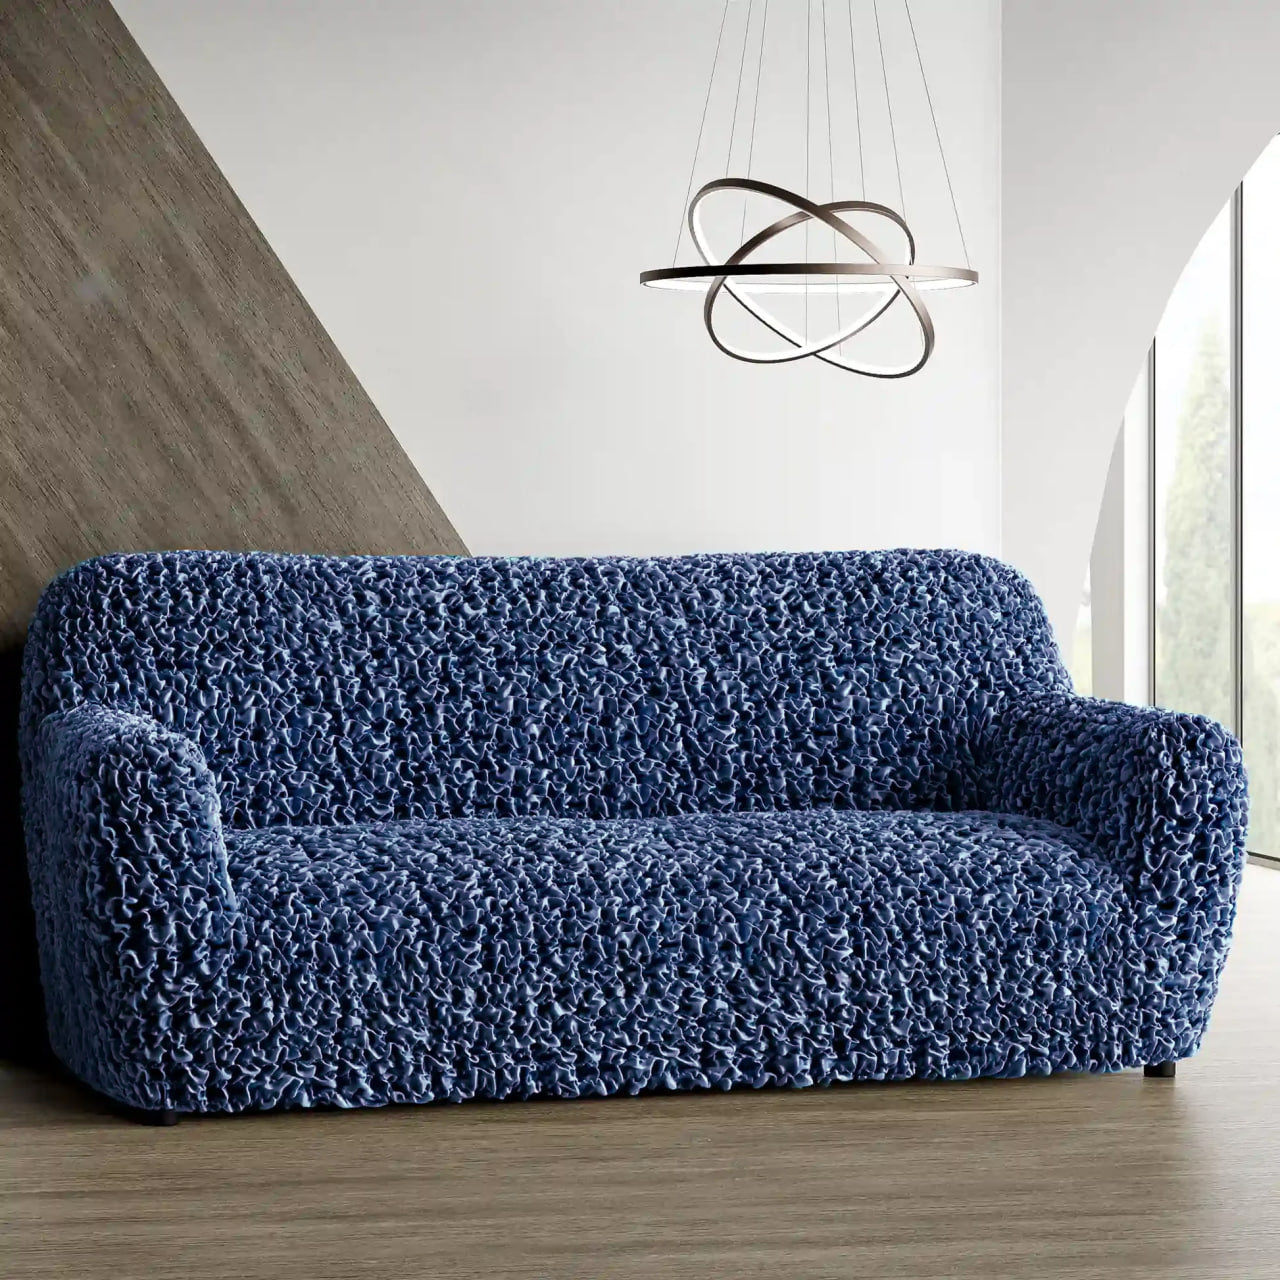 3 Seater Sofa Cover - Blue, Fuco Velvet